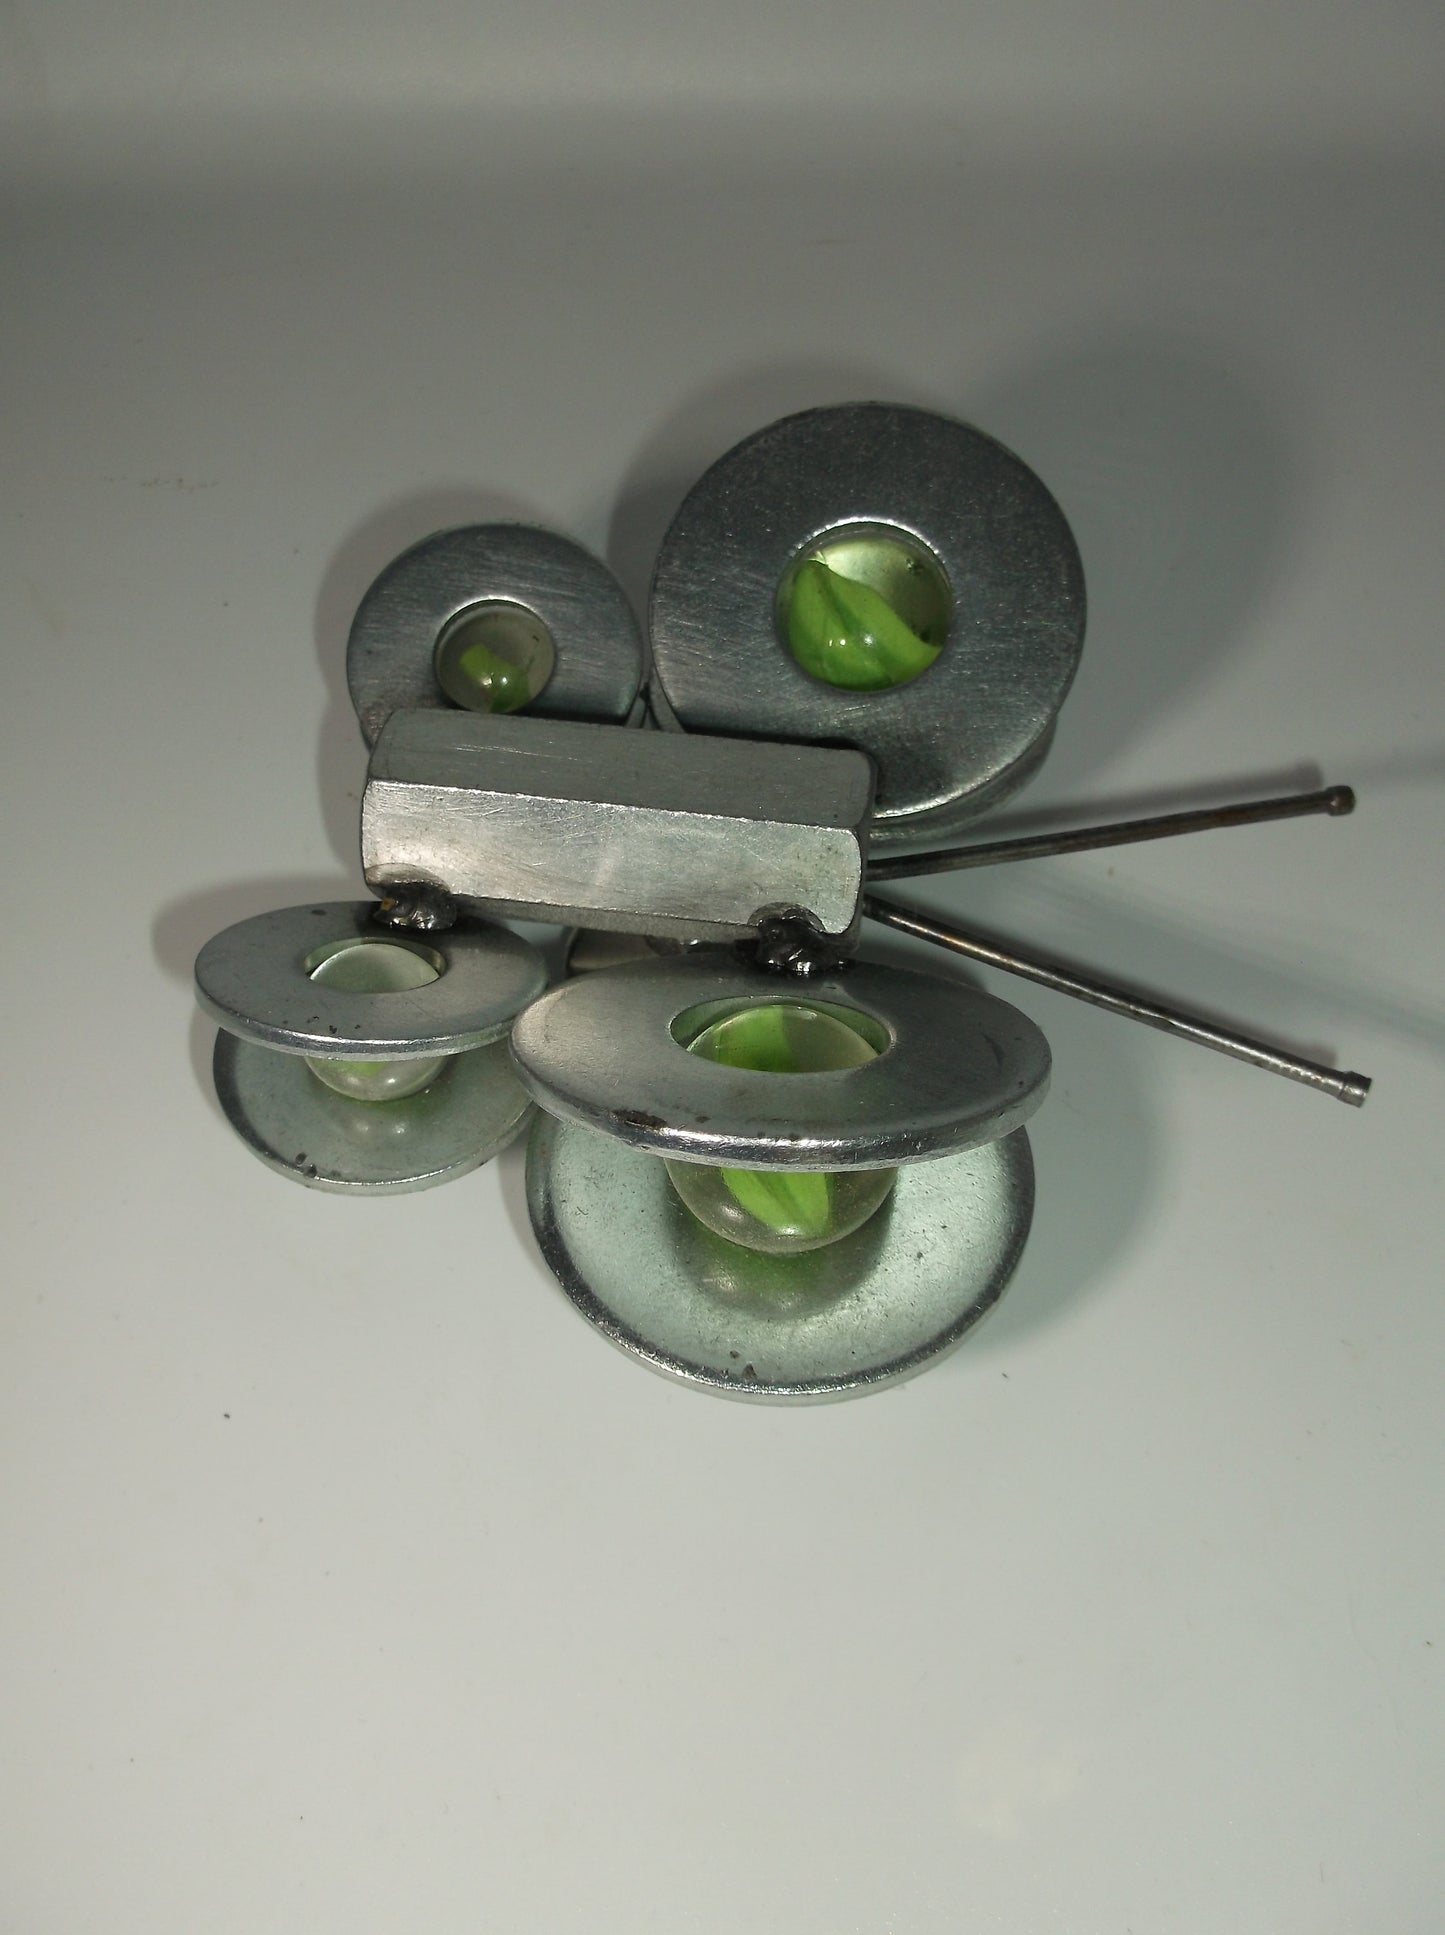 Green Butterfly Metal Art Magnet, garden stake